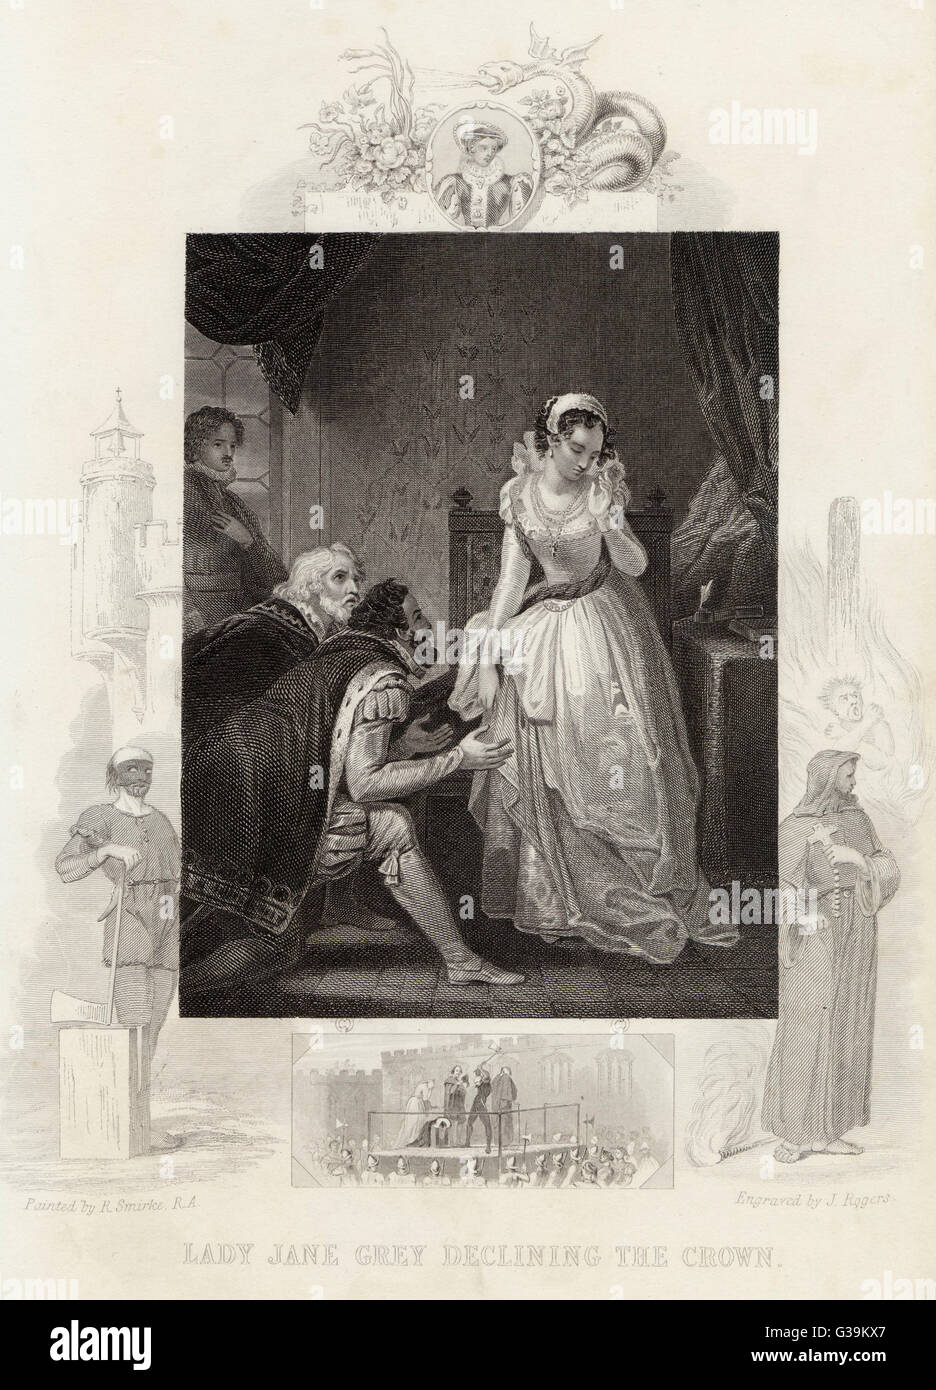 Lady Jane Grey la baisse de la couronne. Elle est devenue reine de neuf jours, mais fut décapité à la Tour de Londres lorsque Marie Tudor a pris la couronne. Date : 8 juillet 1553 Banque D'Images